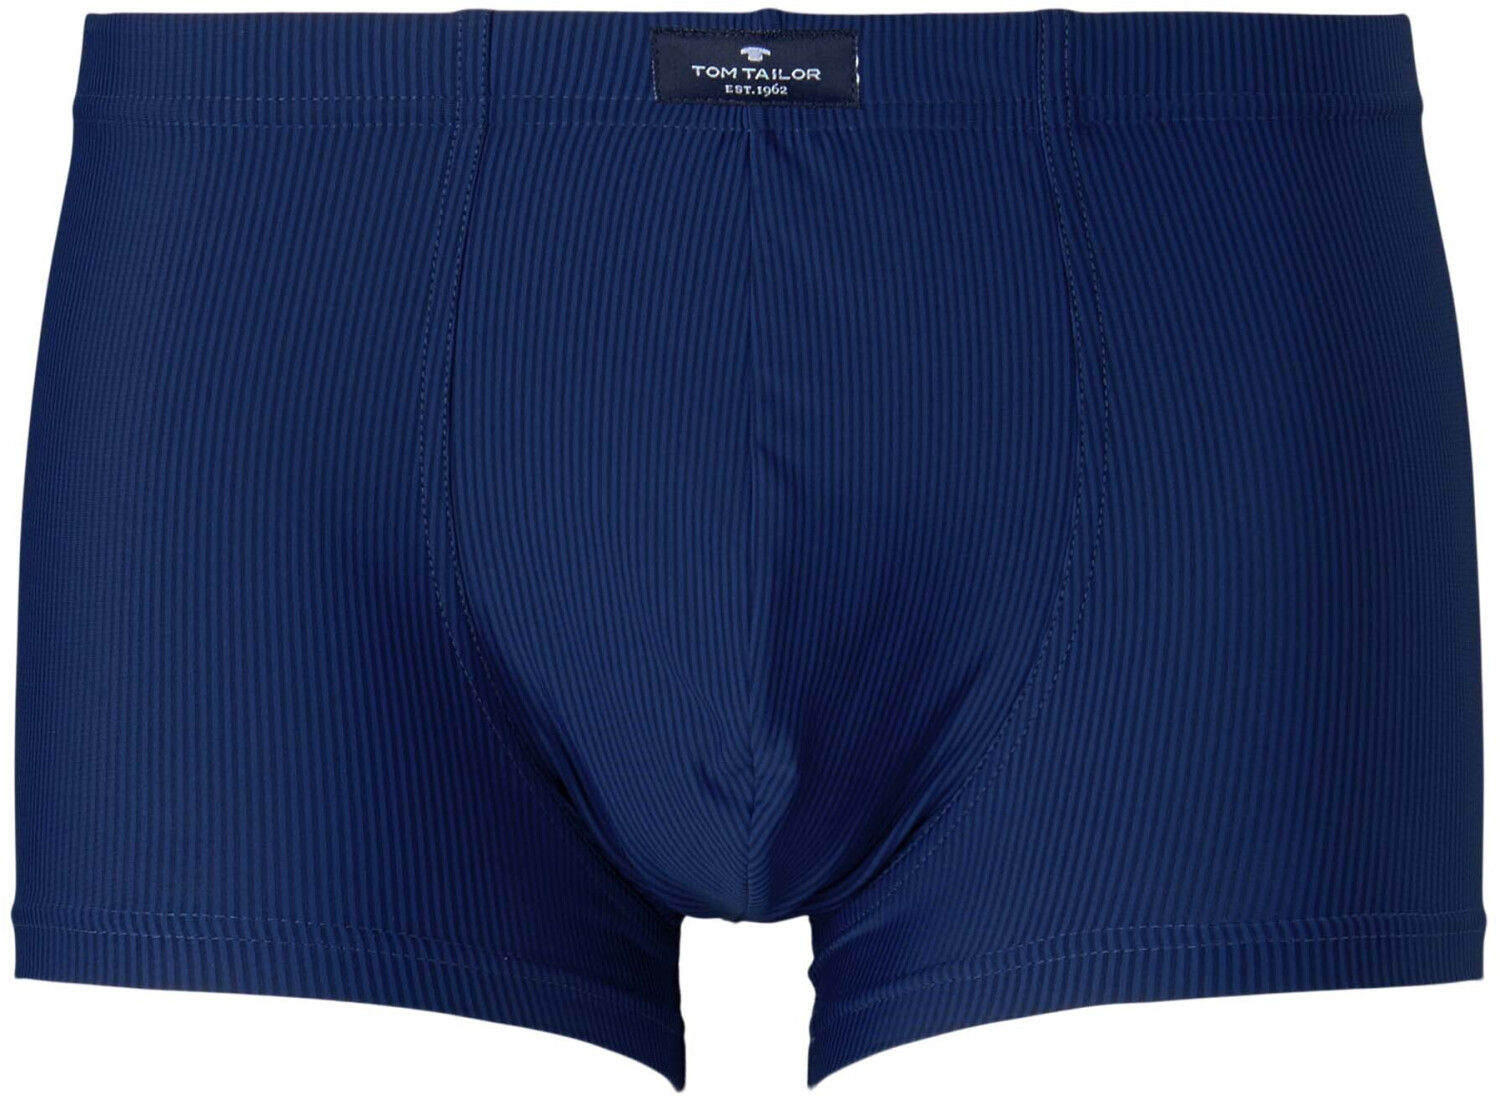 Tom Tailor Herren-unterwäsche (7156 0010) blue-medium-solid ab 17,90 € |  Preisvergleich bei